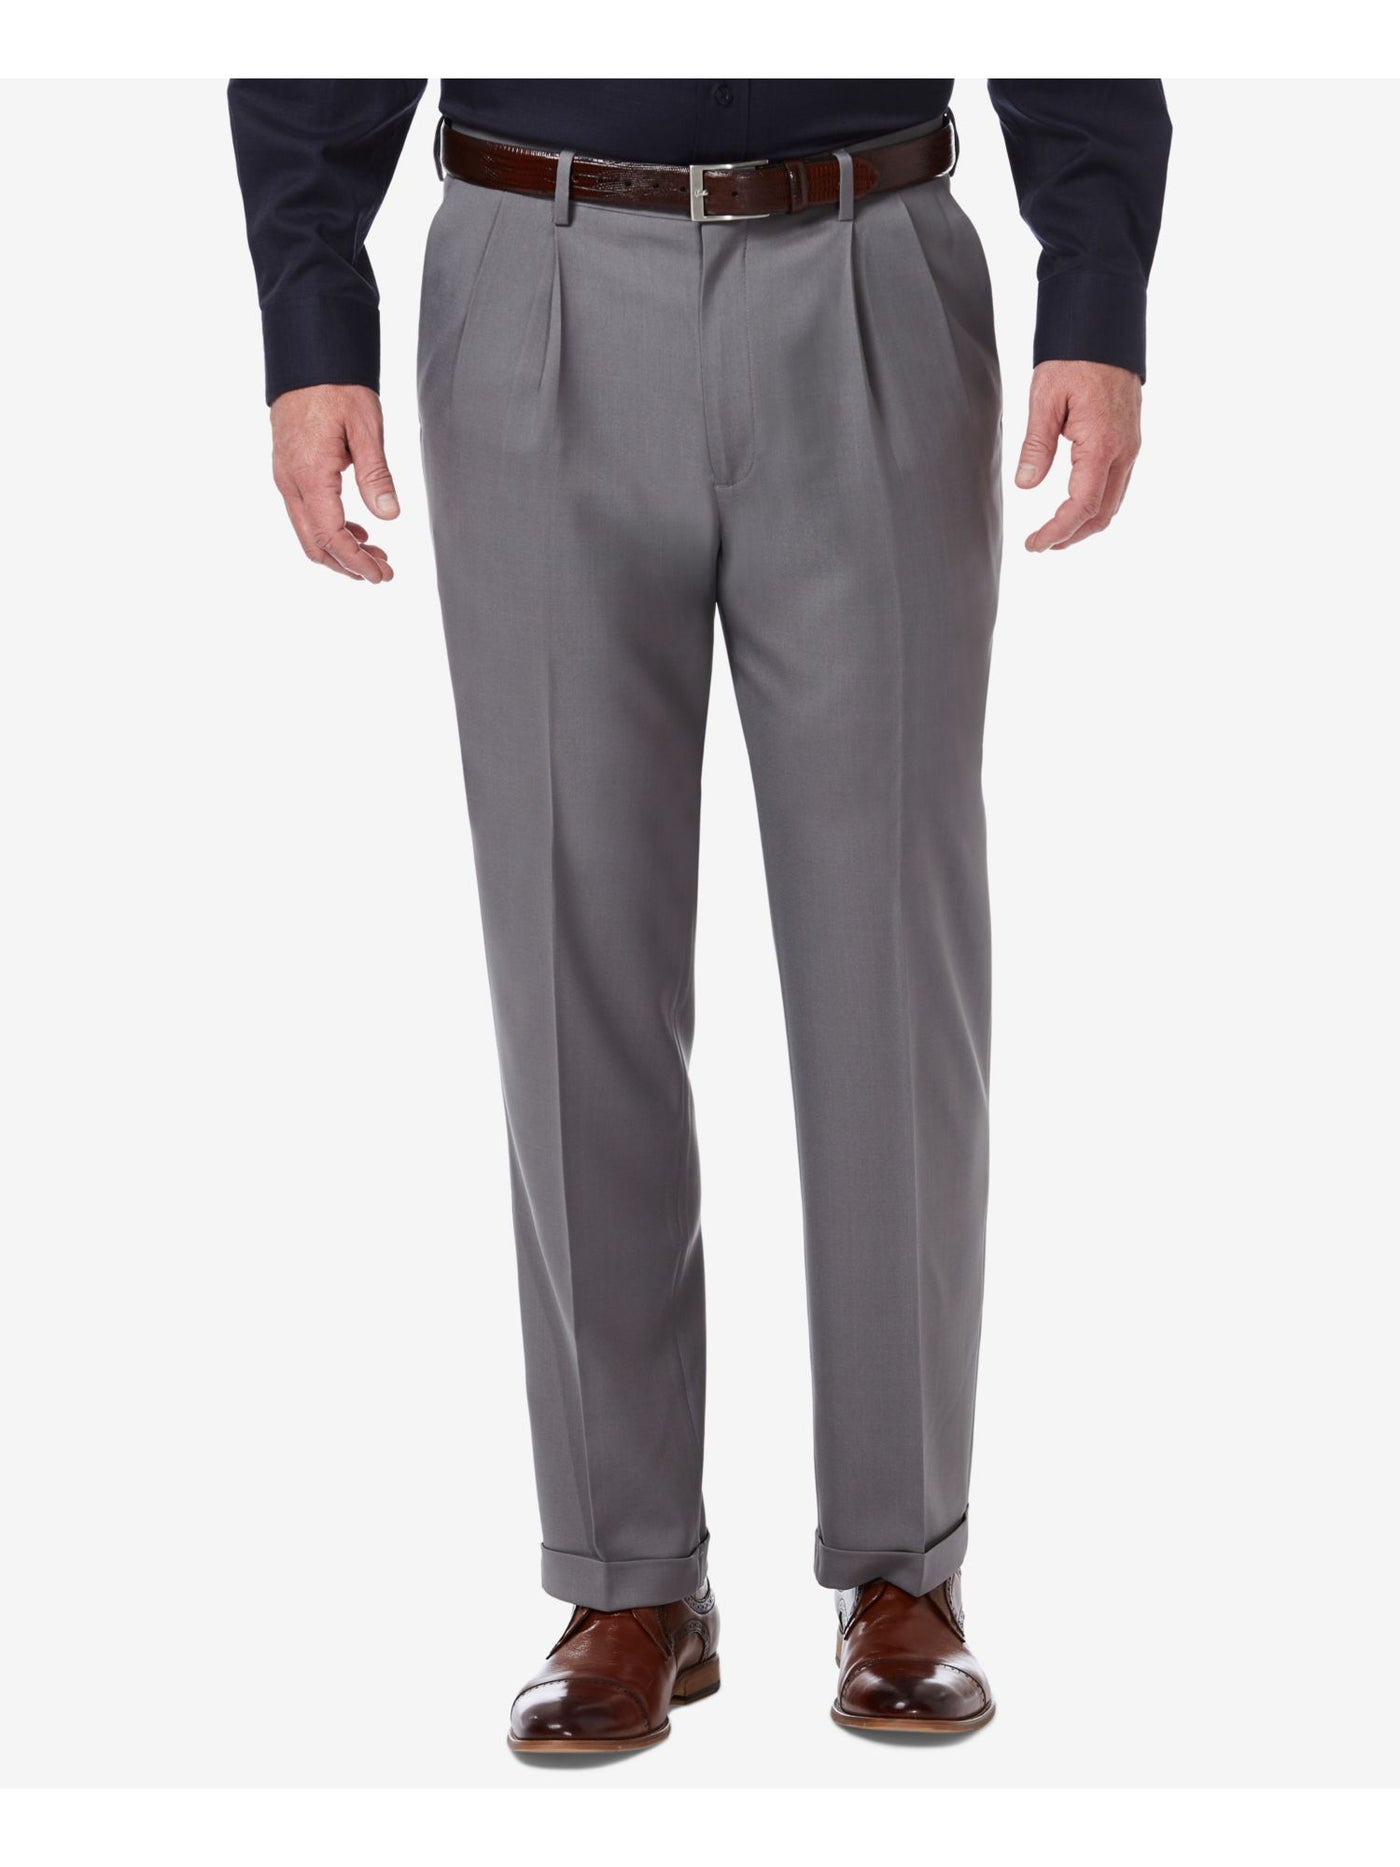 HAGGAR Mens Premium Comfort Gray Classic Fit Stretch Pants 36W\32L